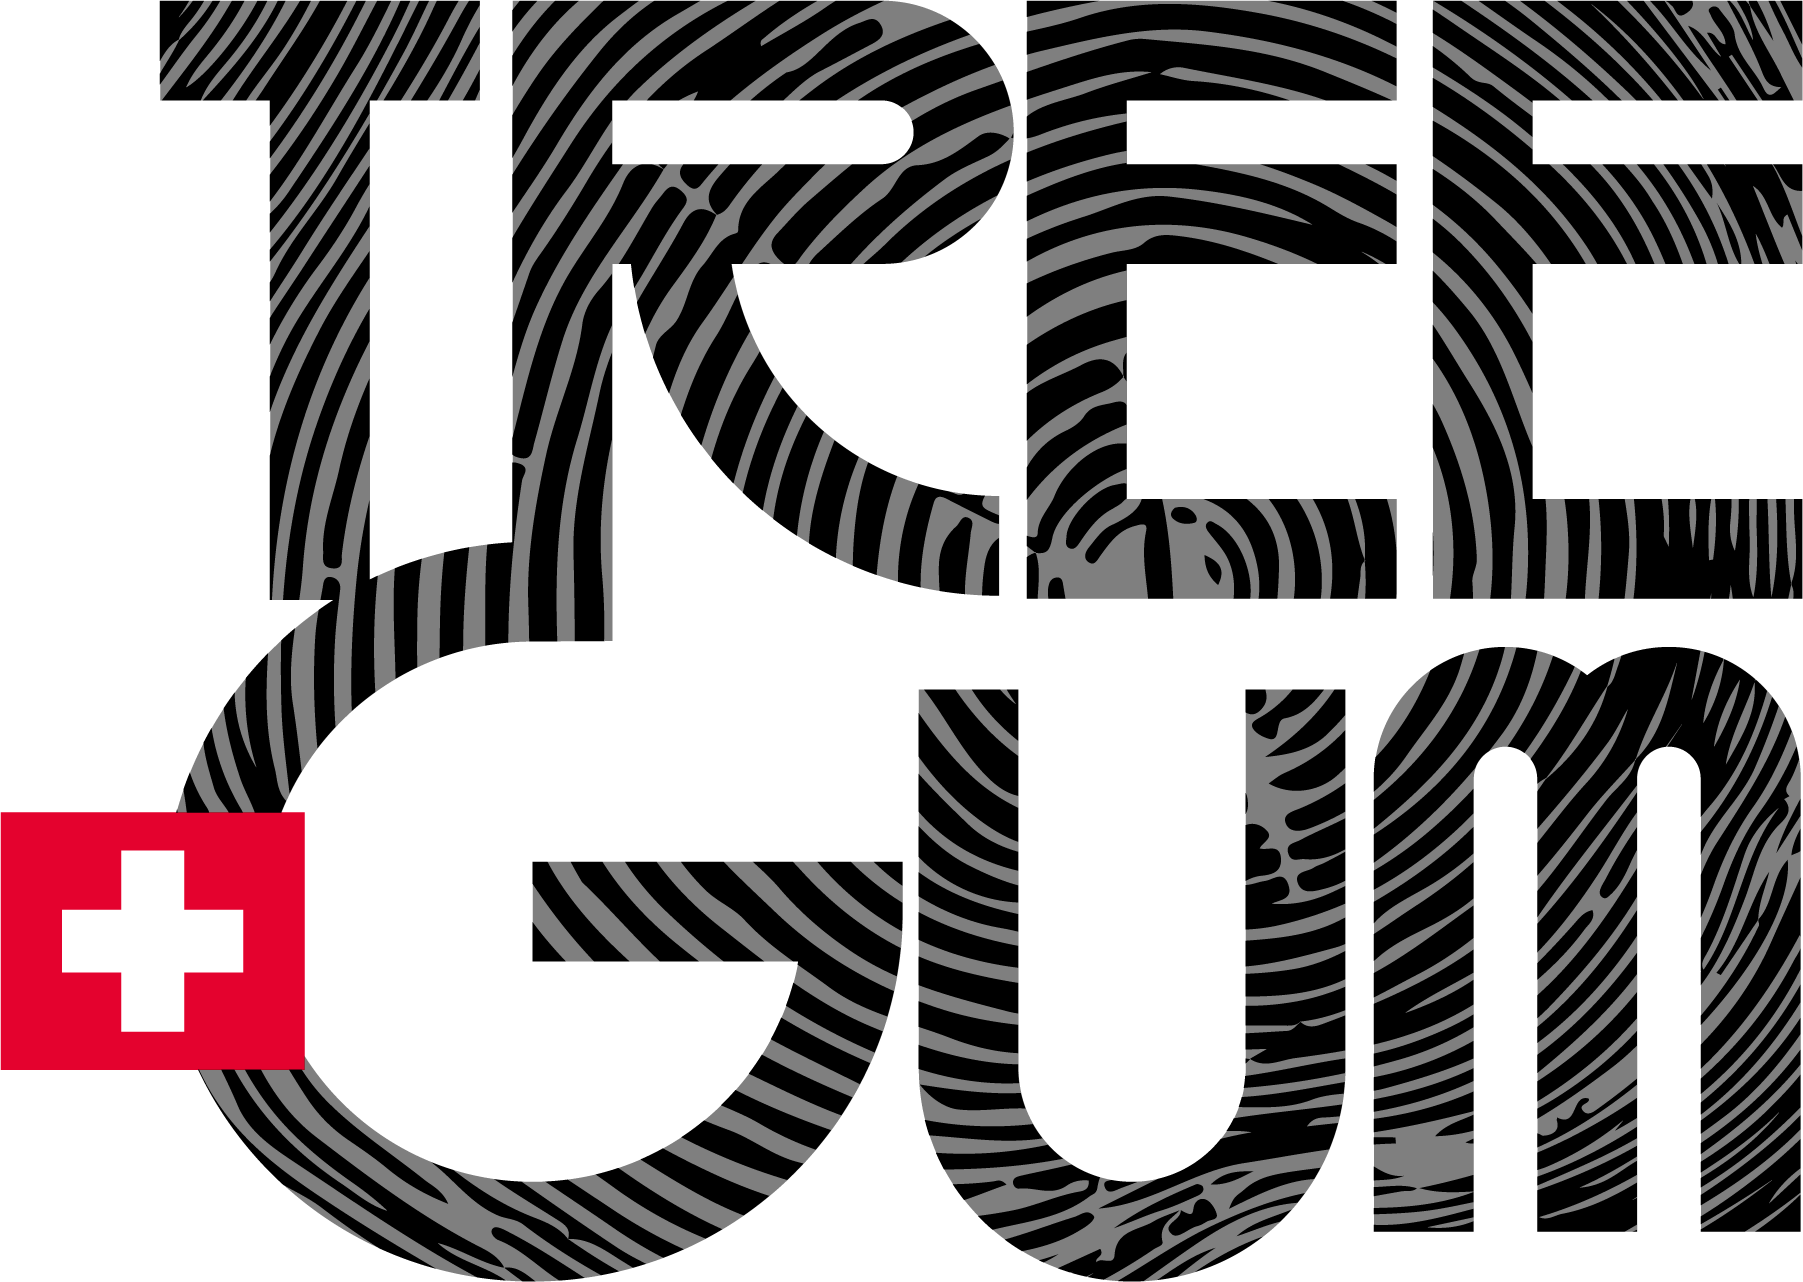 Tree Gum